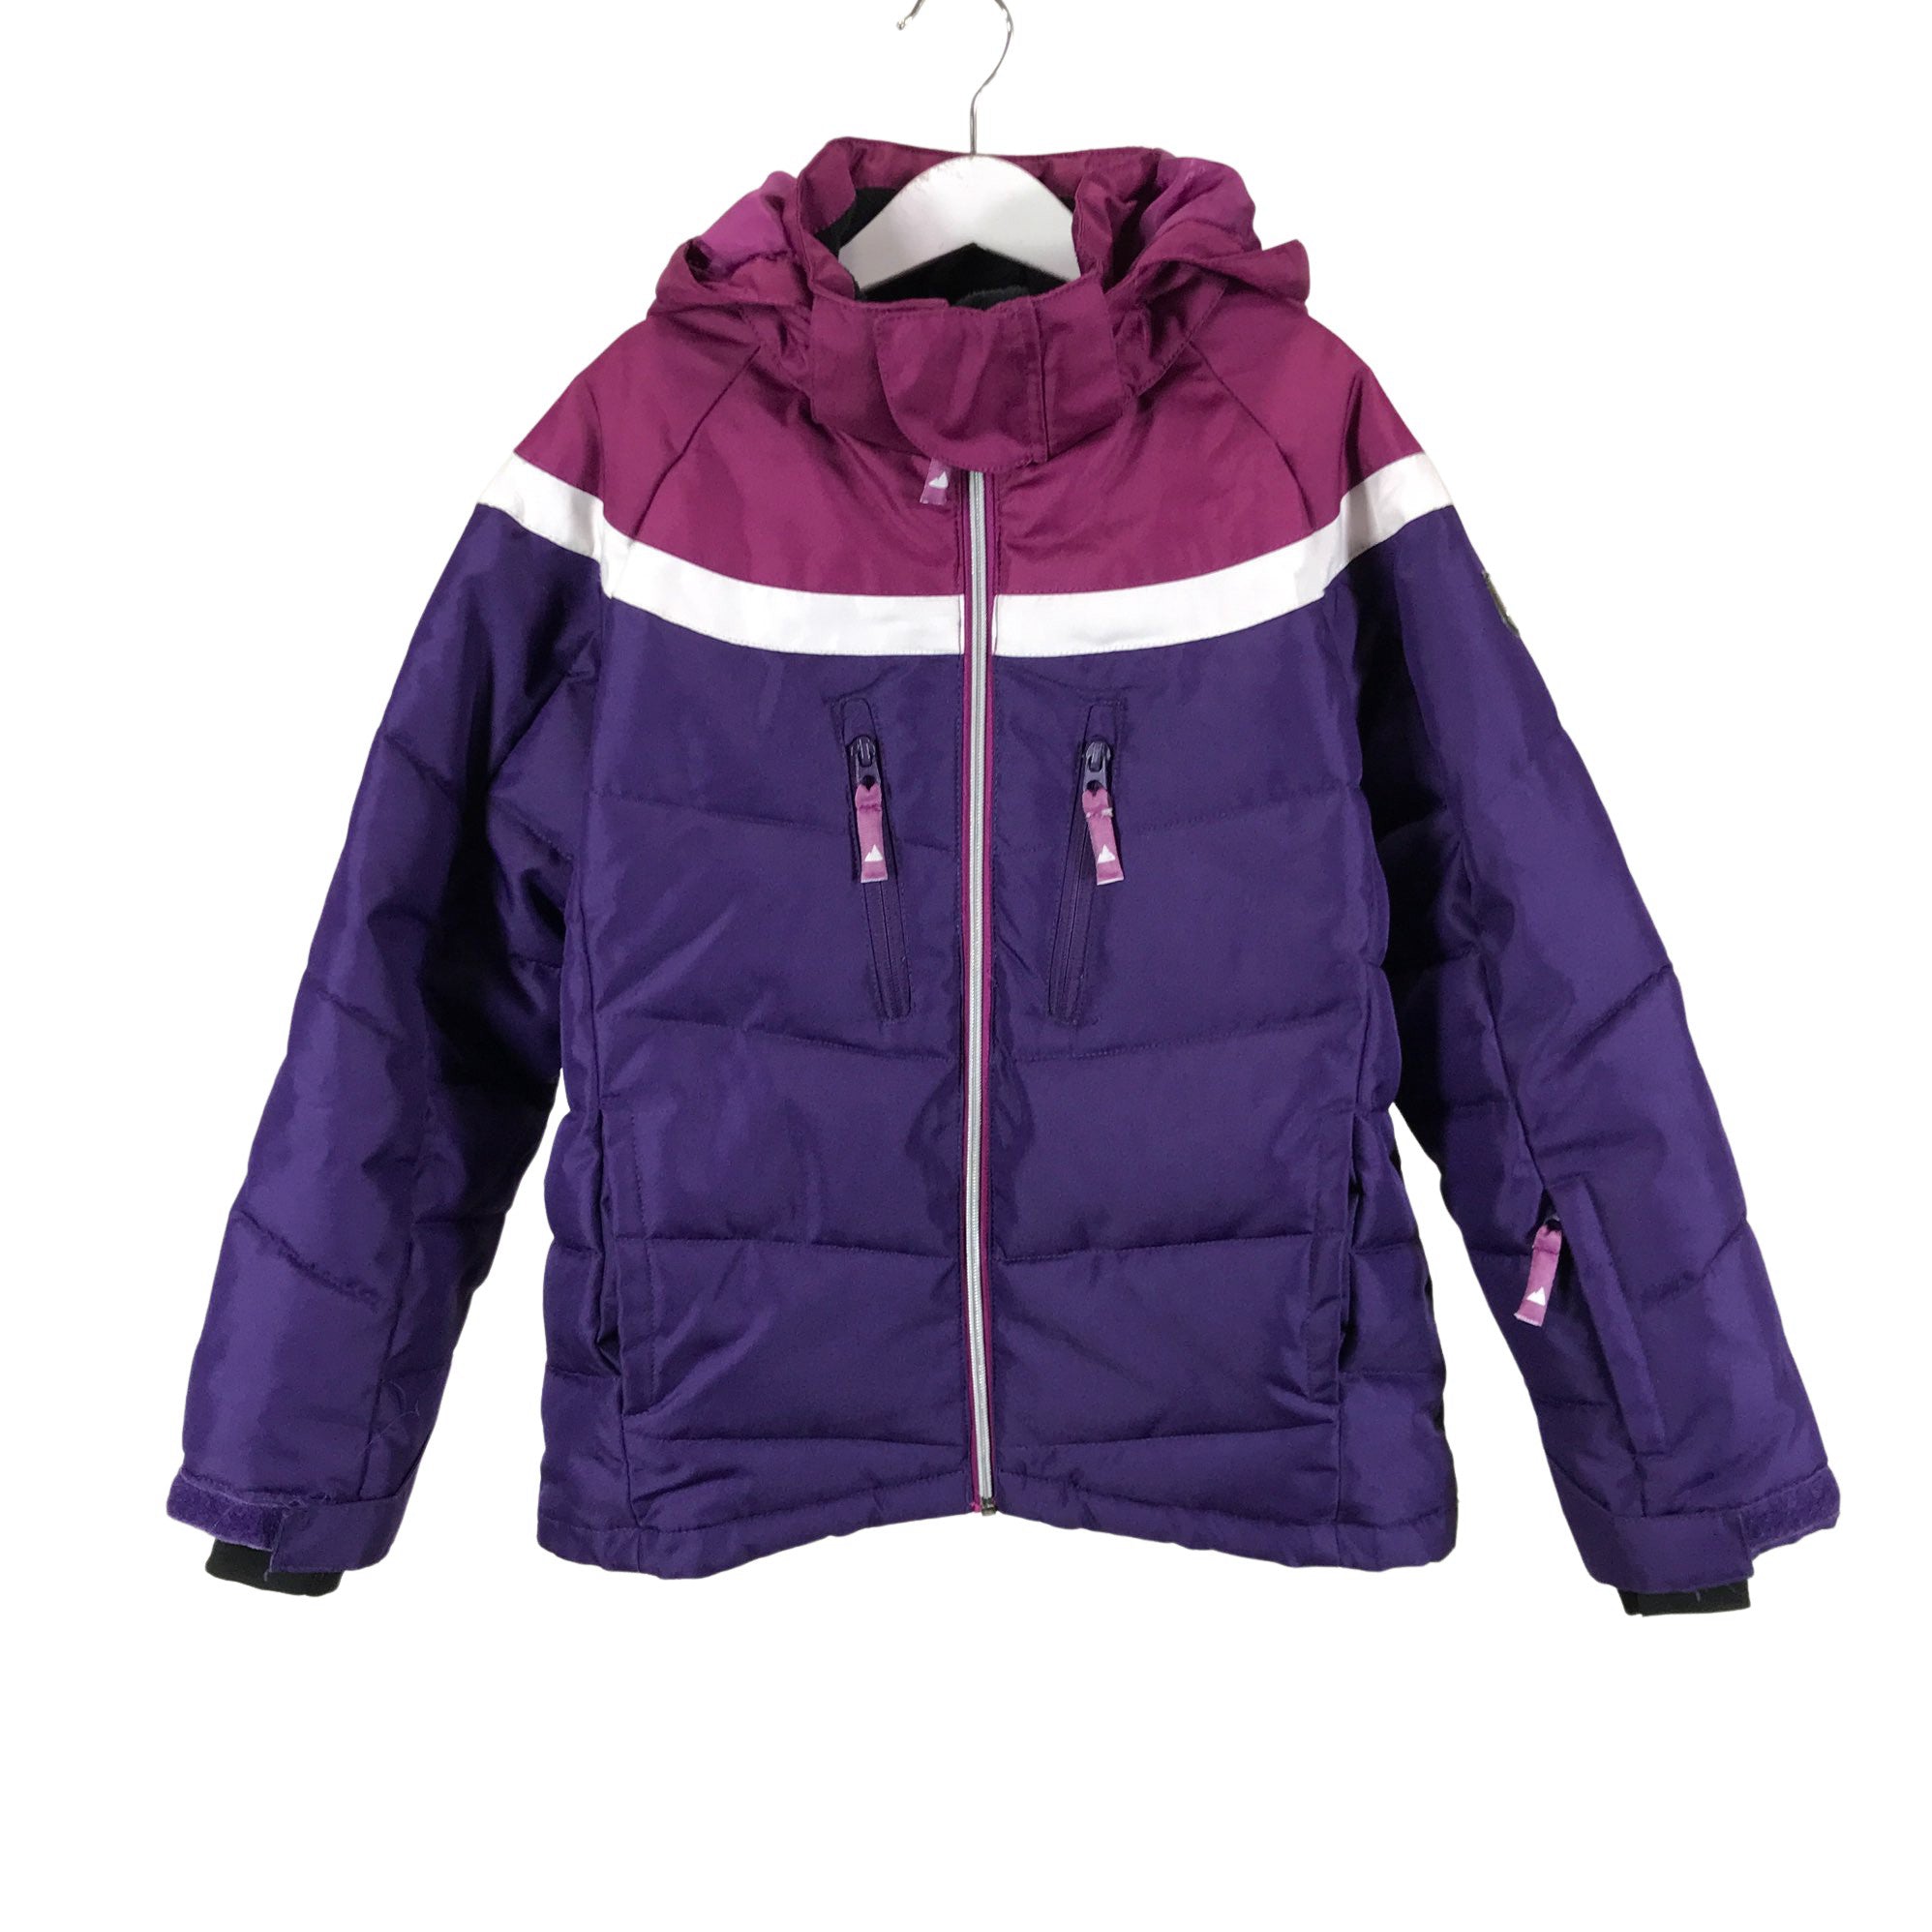 Tuxer Winter jacket, size 134 - 140 (Purple) Emmy